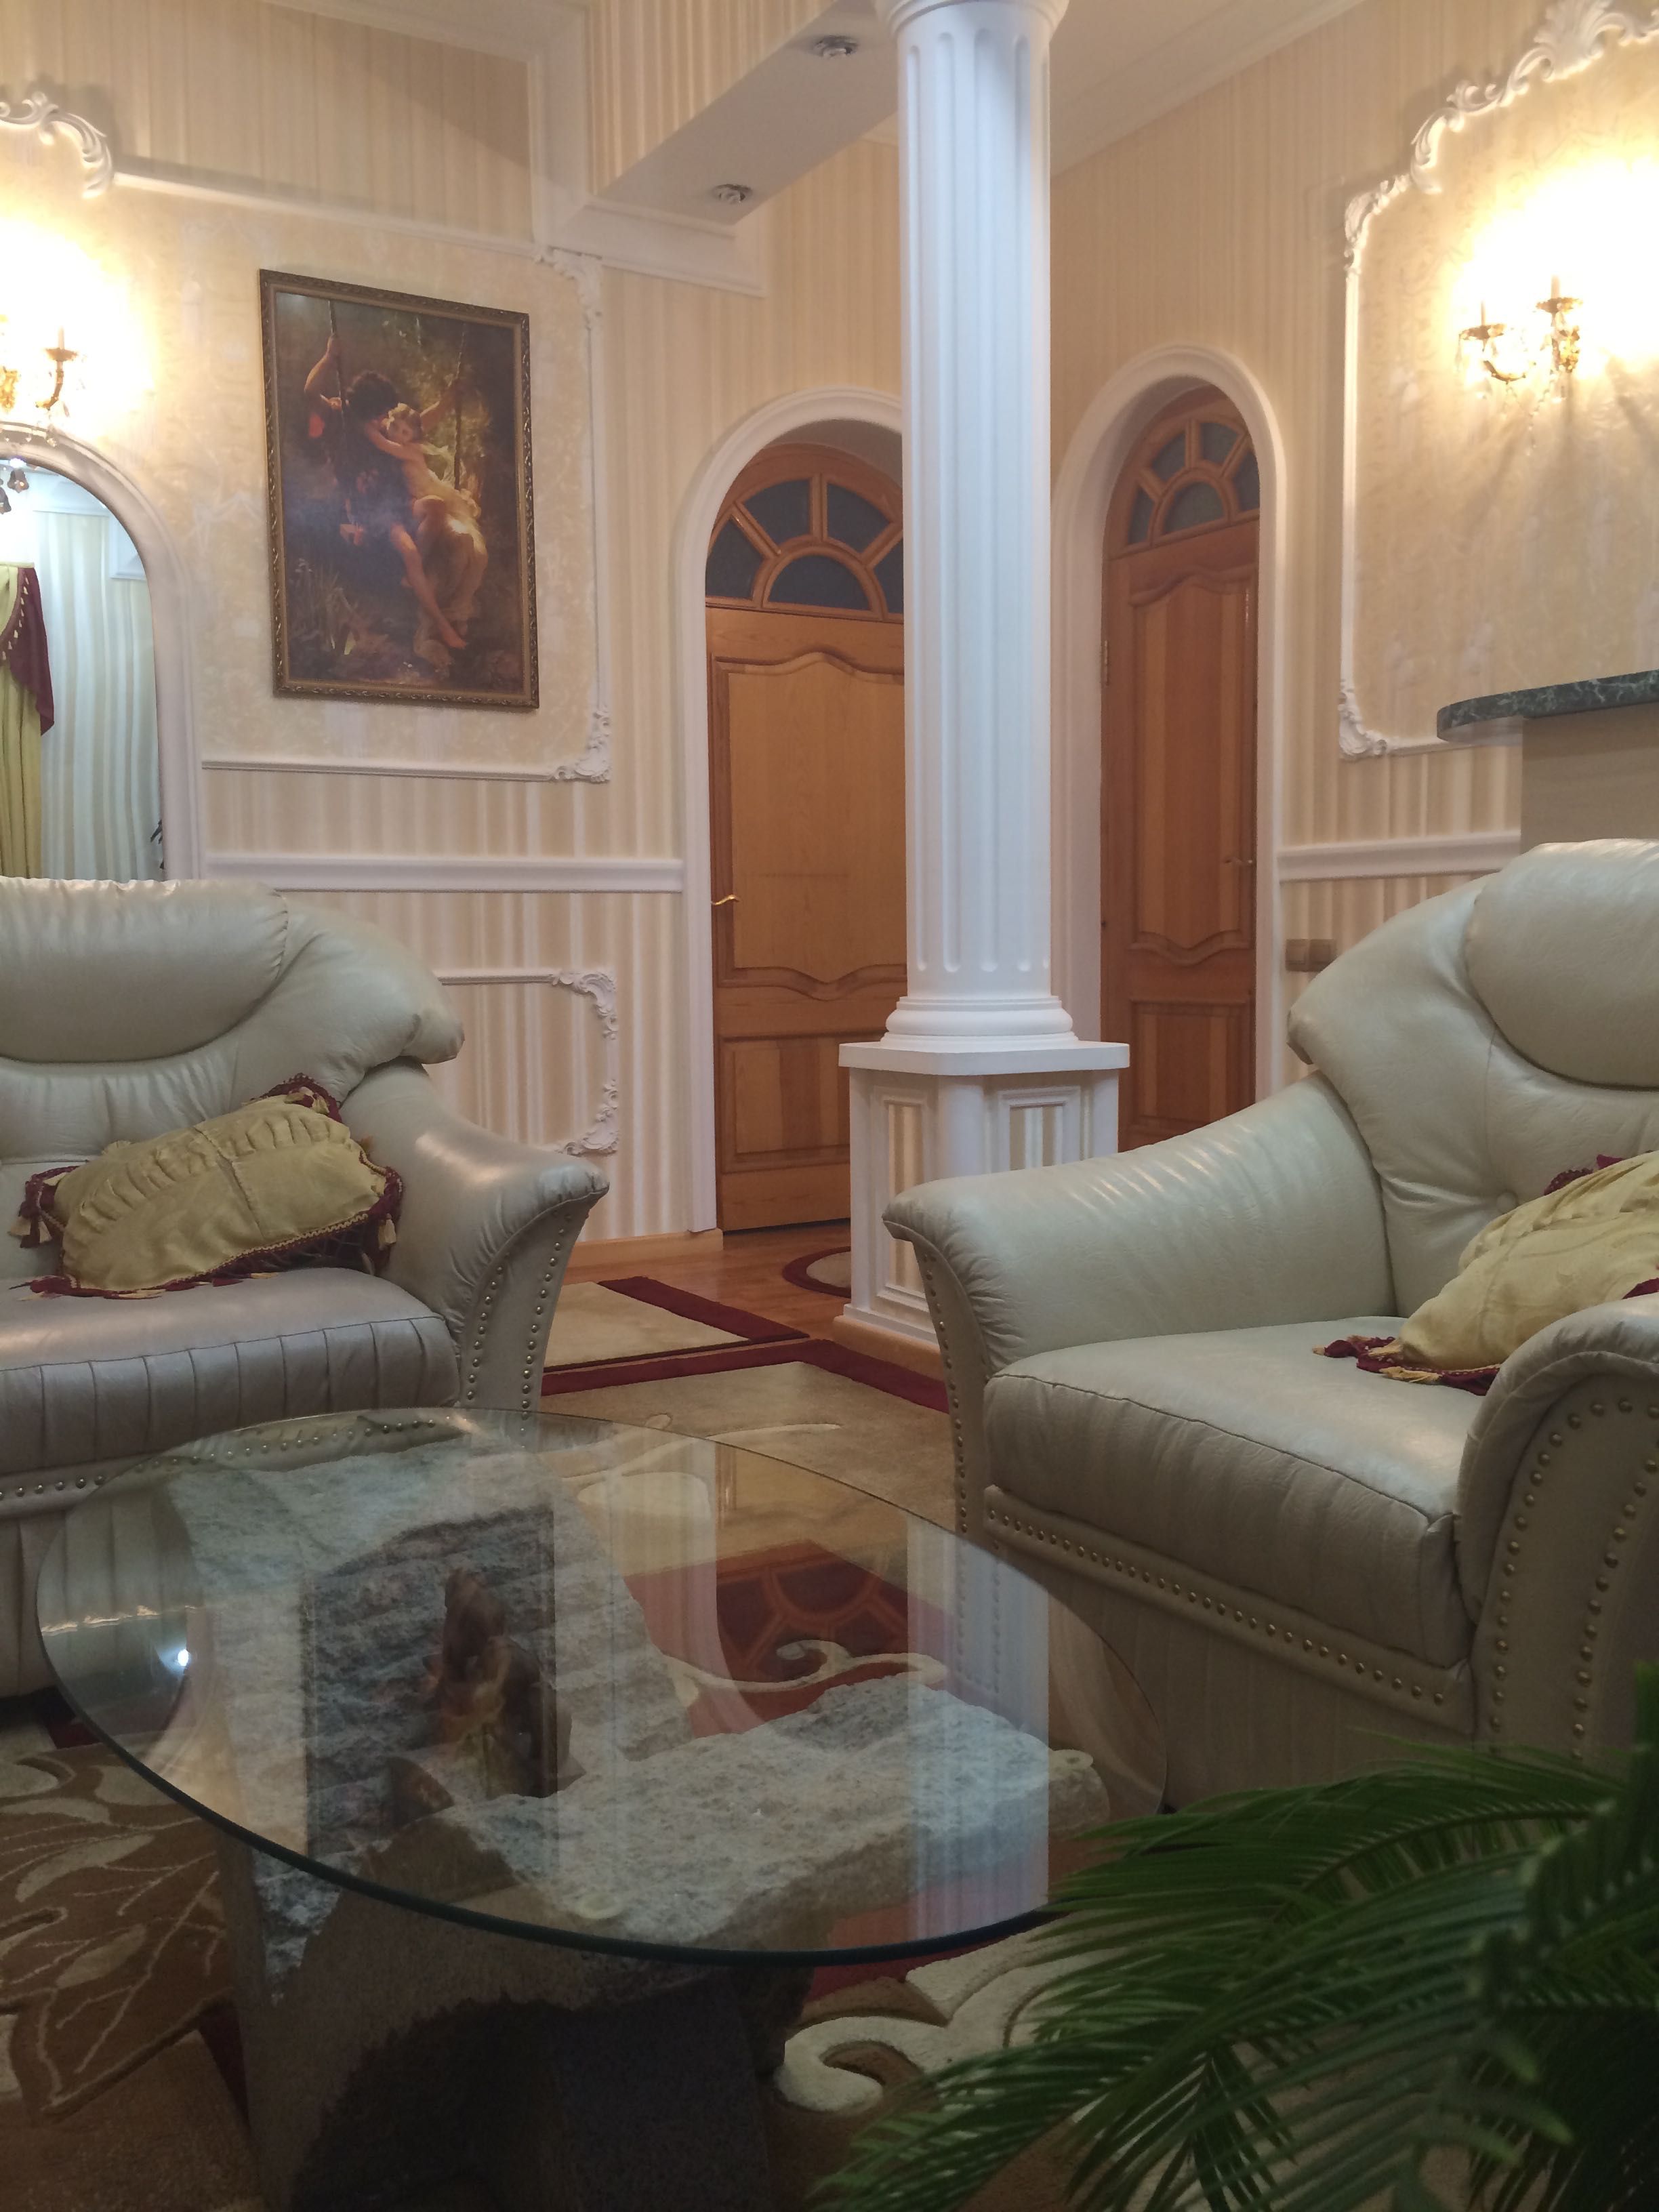 Продается собственная роскошная квартира с евроремонтом в «Сталинке»!